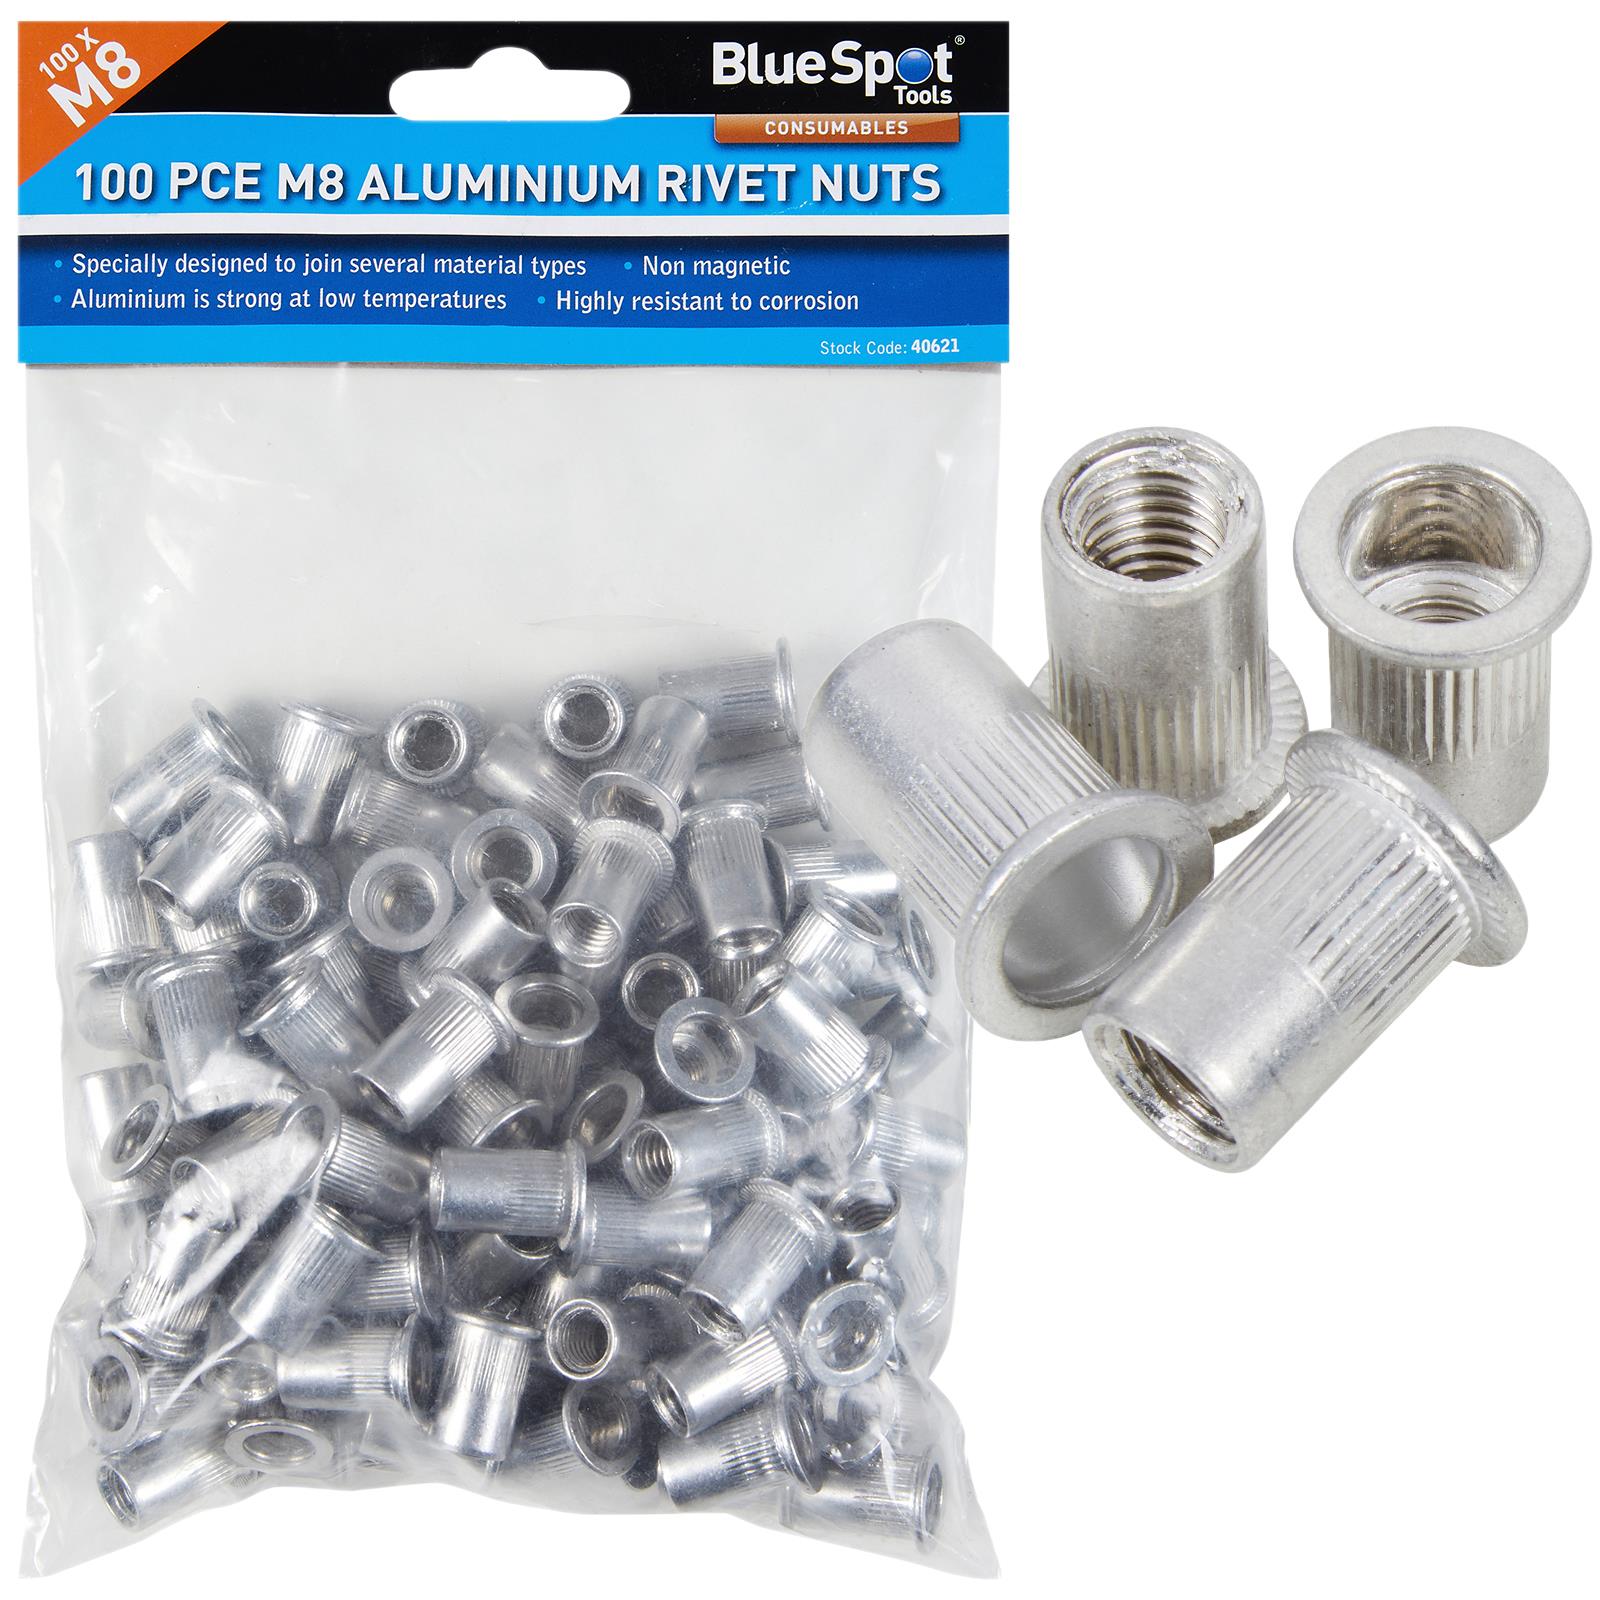 BlueSpot Aluminium Rivet Nuts M8 100 Piece Rivnuts